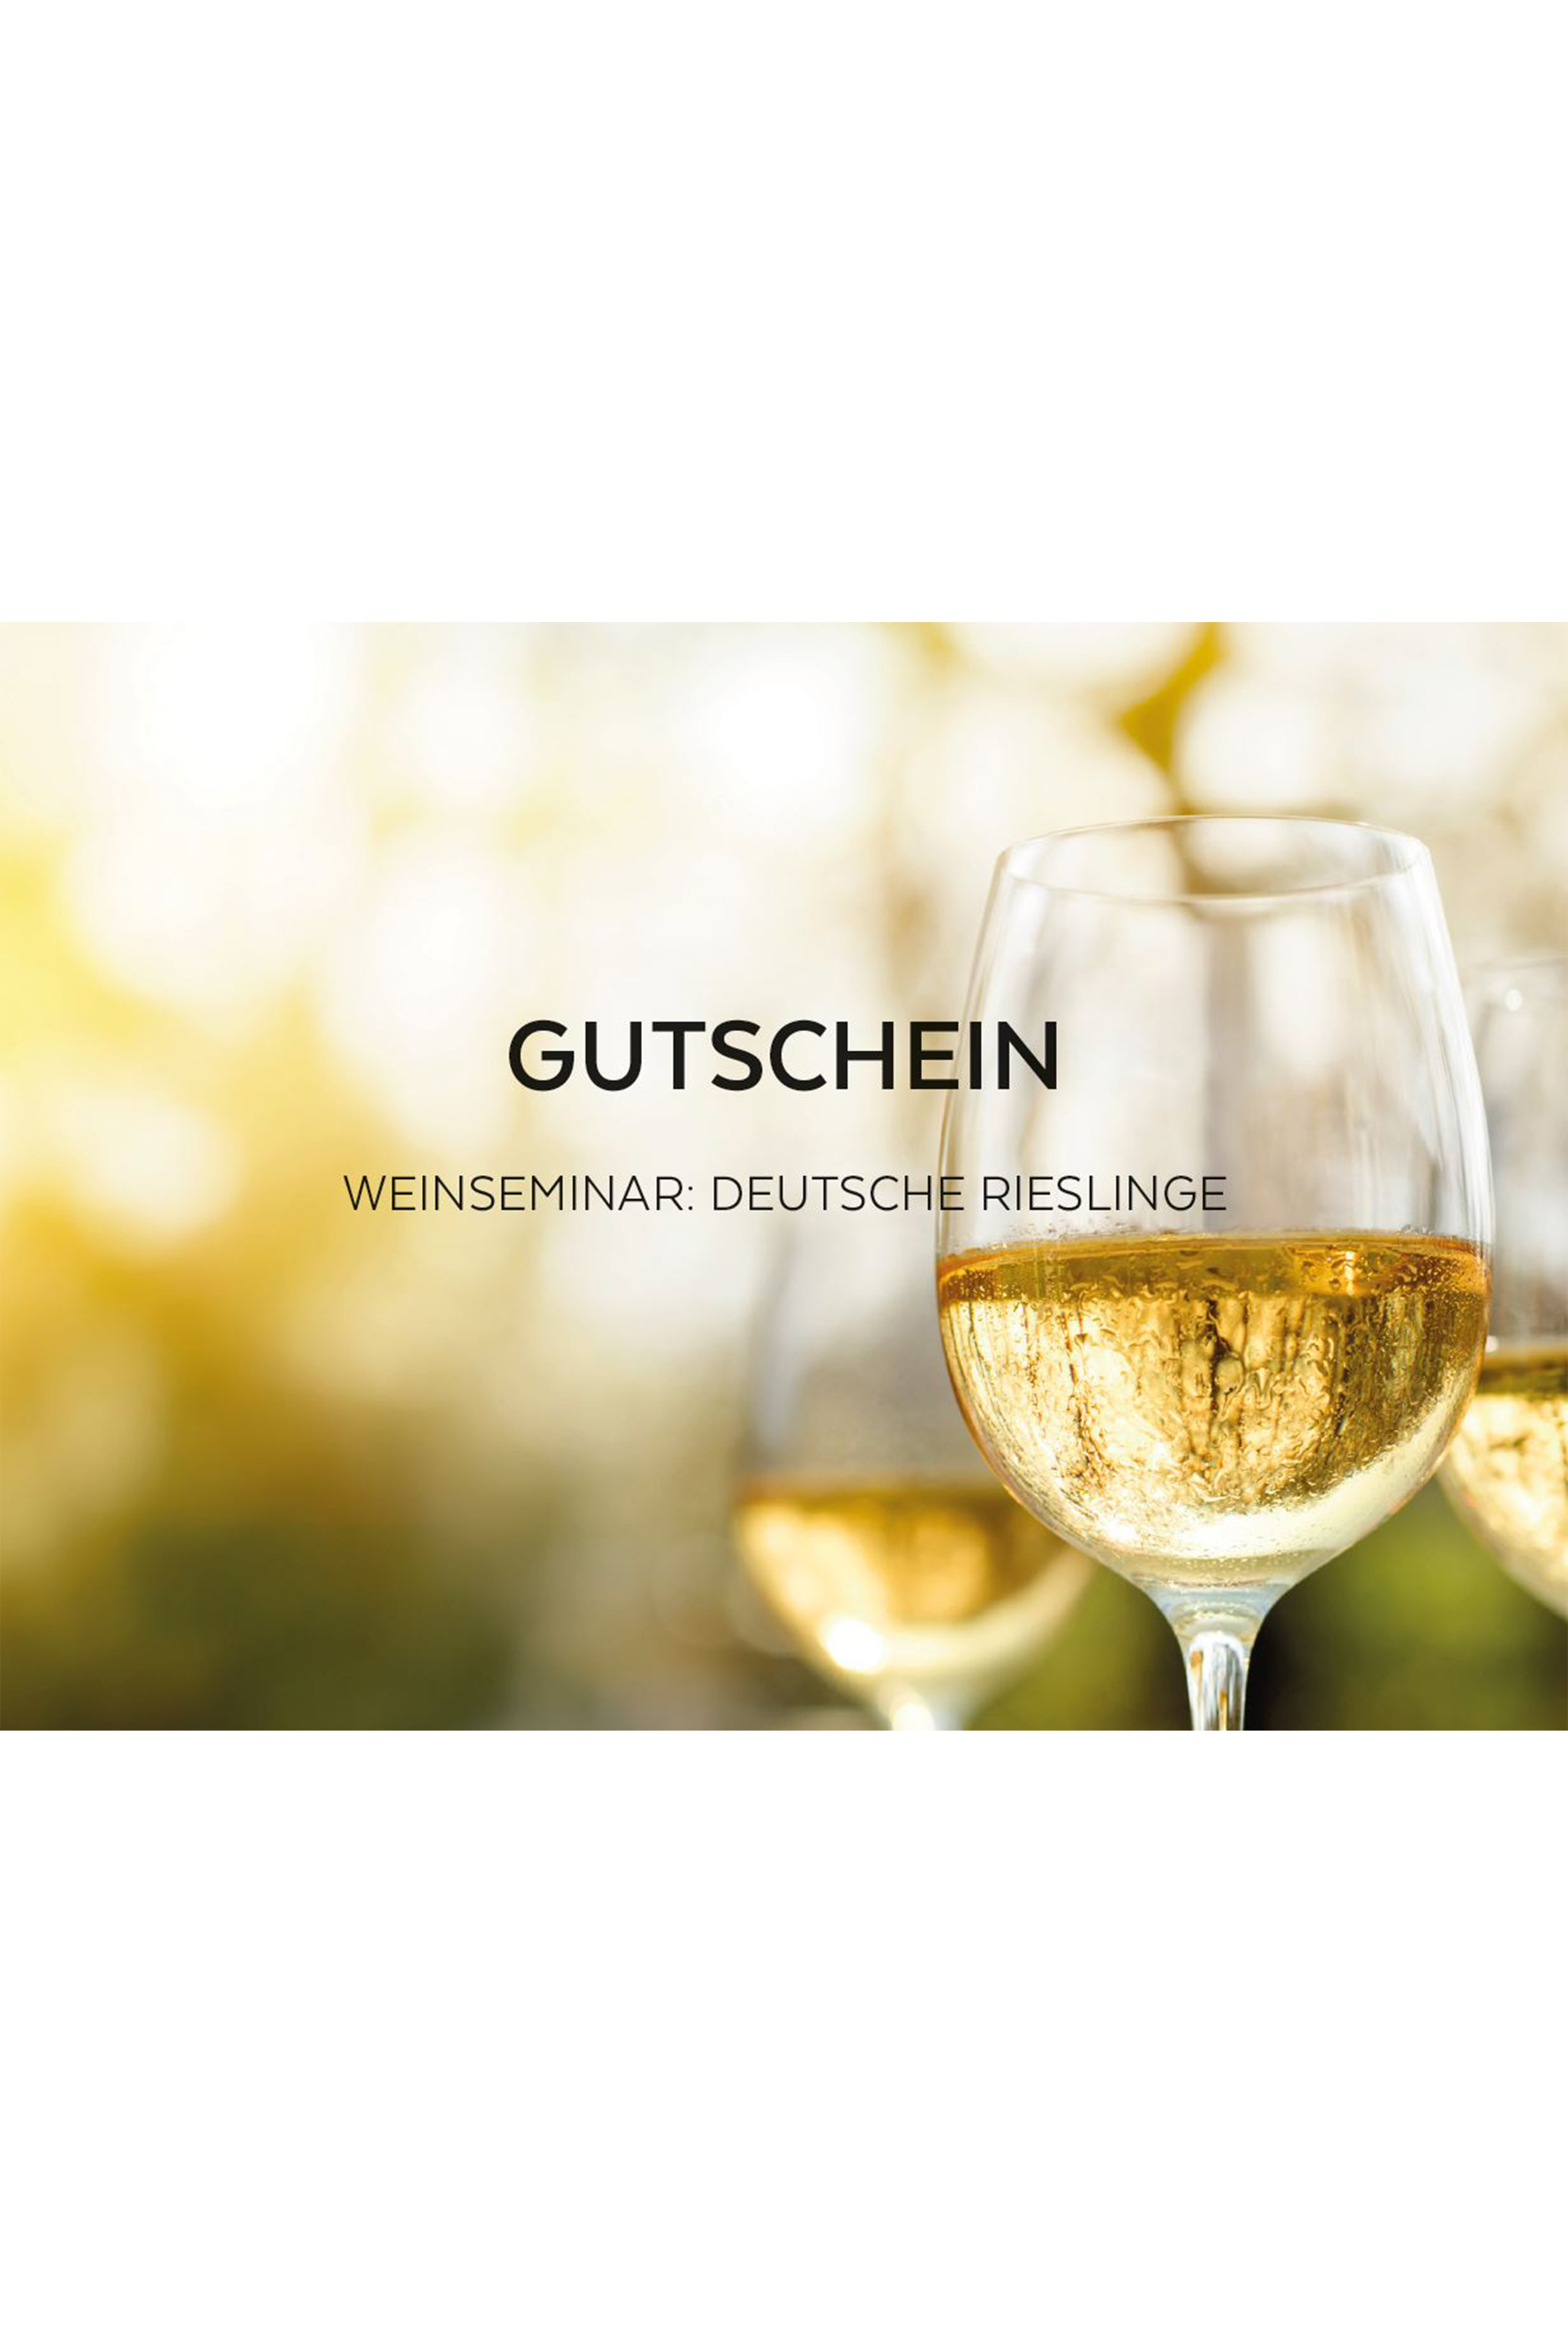 Eintritt Weinseminar Deutsche Rieslinge